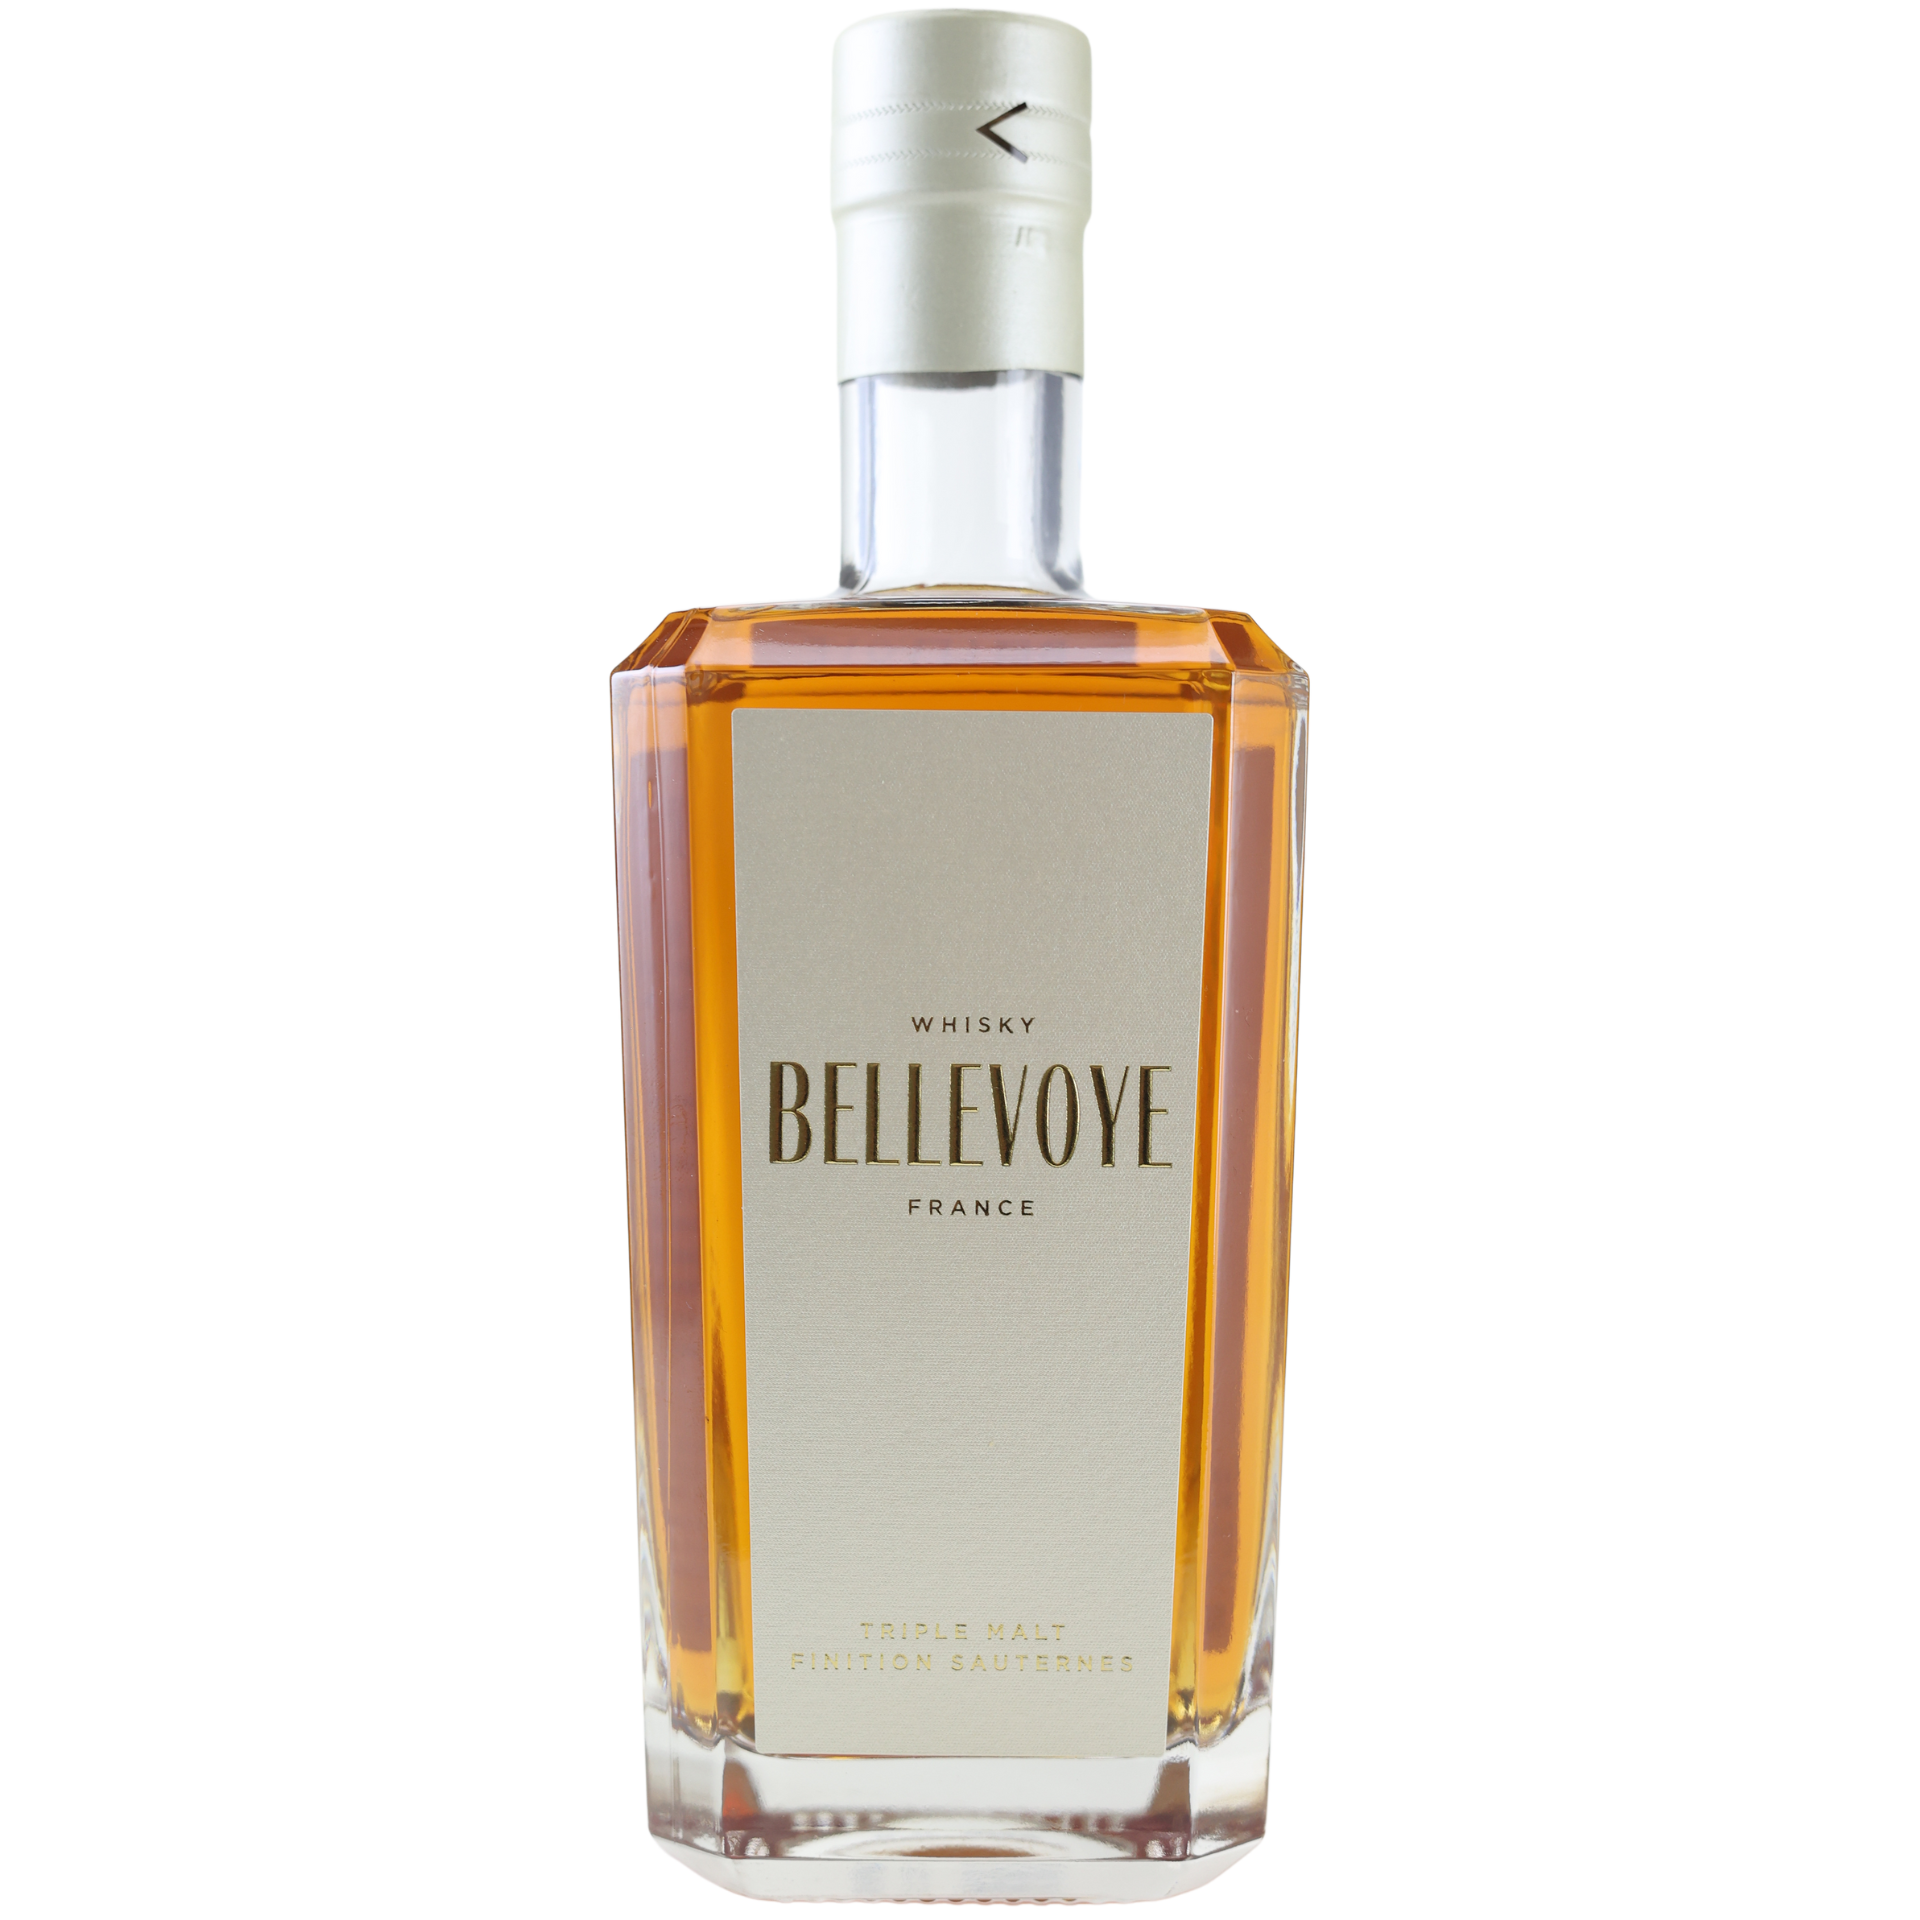 Bellevoye Sauternes Finish Whisky 40% 0,7l